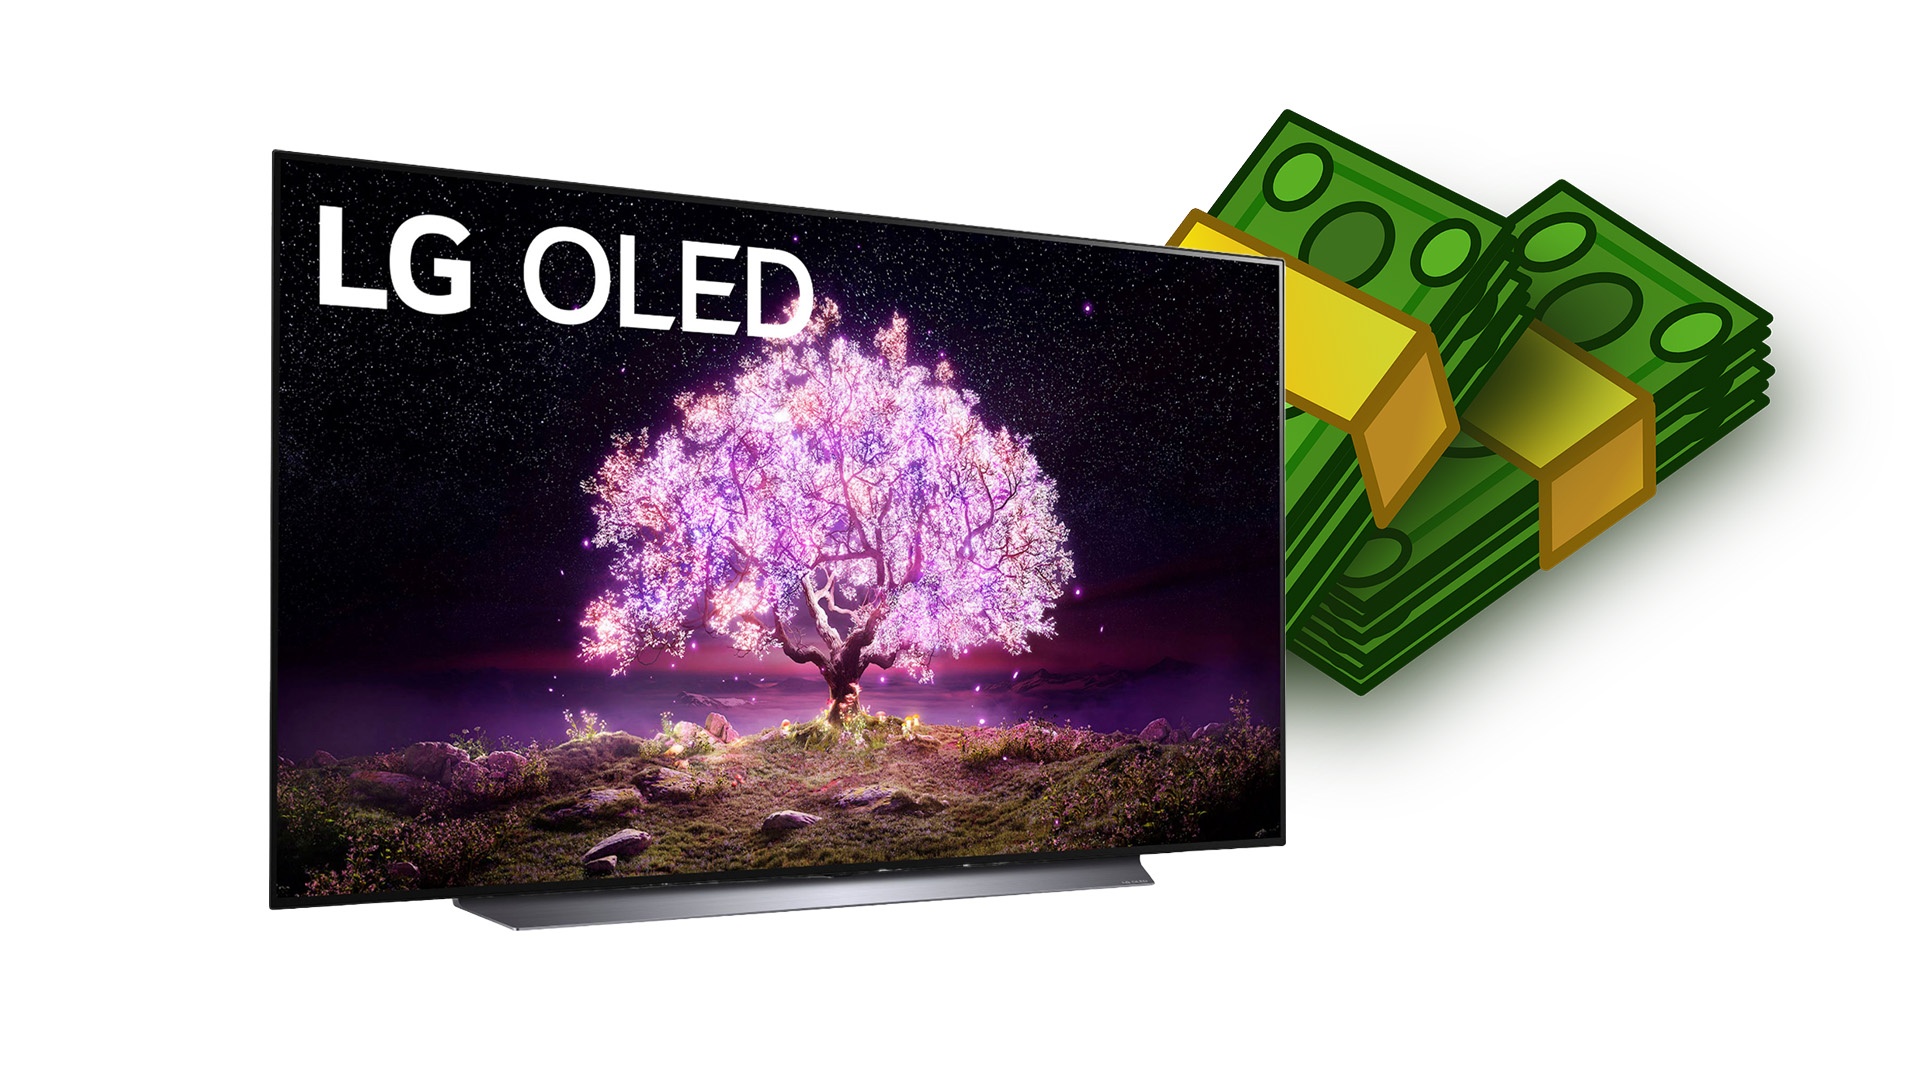 #Billige OLED-TVs? – Warum 4K-OLED-Fernseher bald deutlich günstiger werden könnten